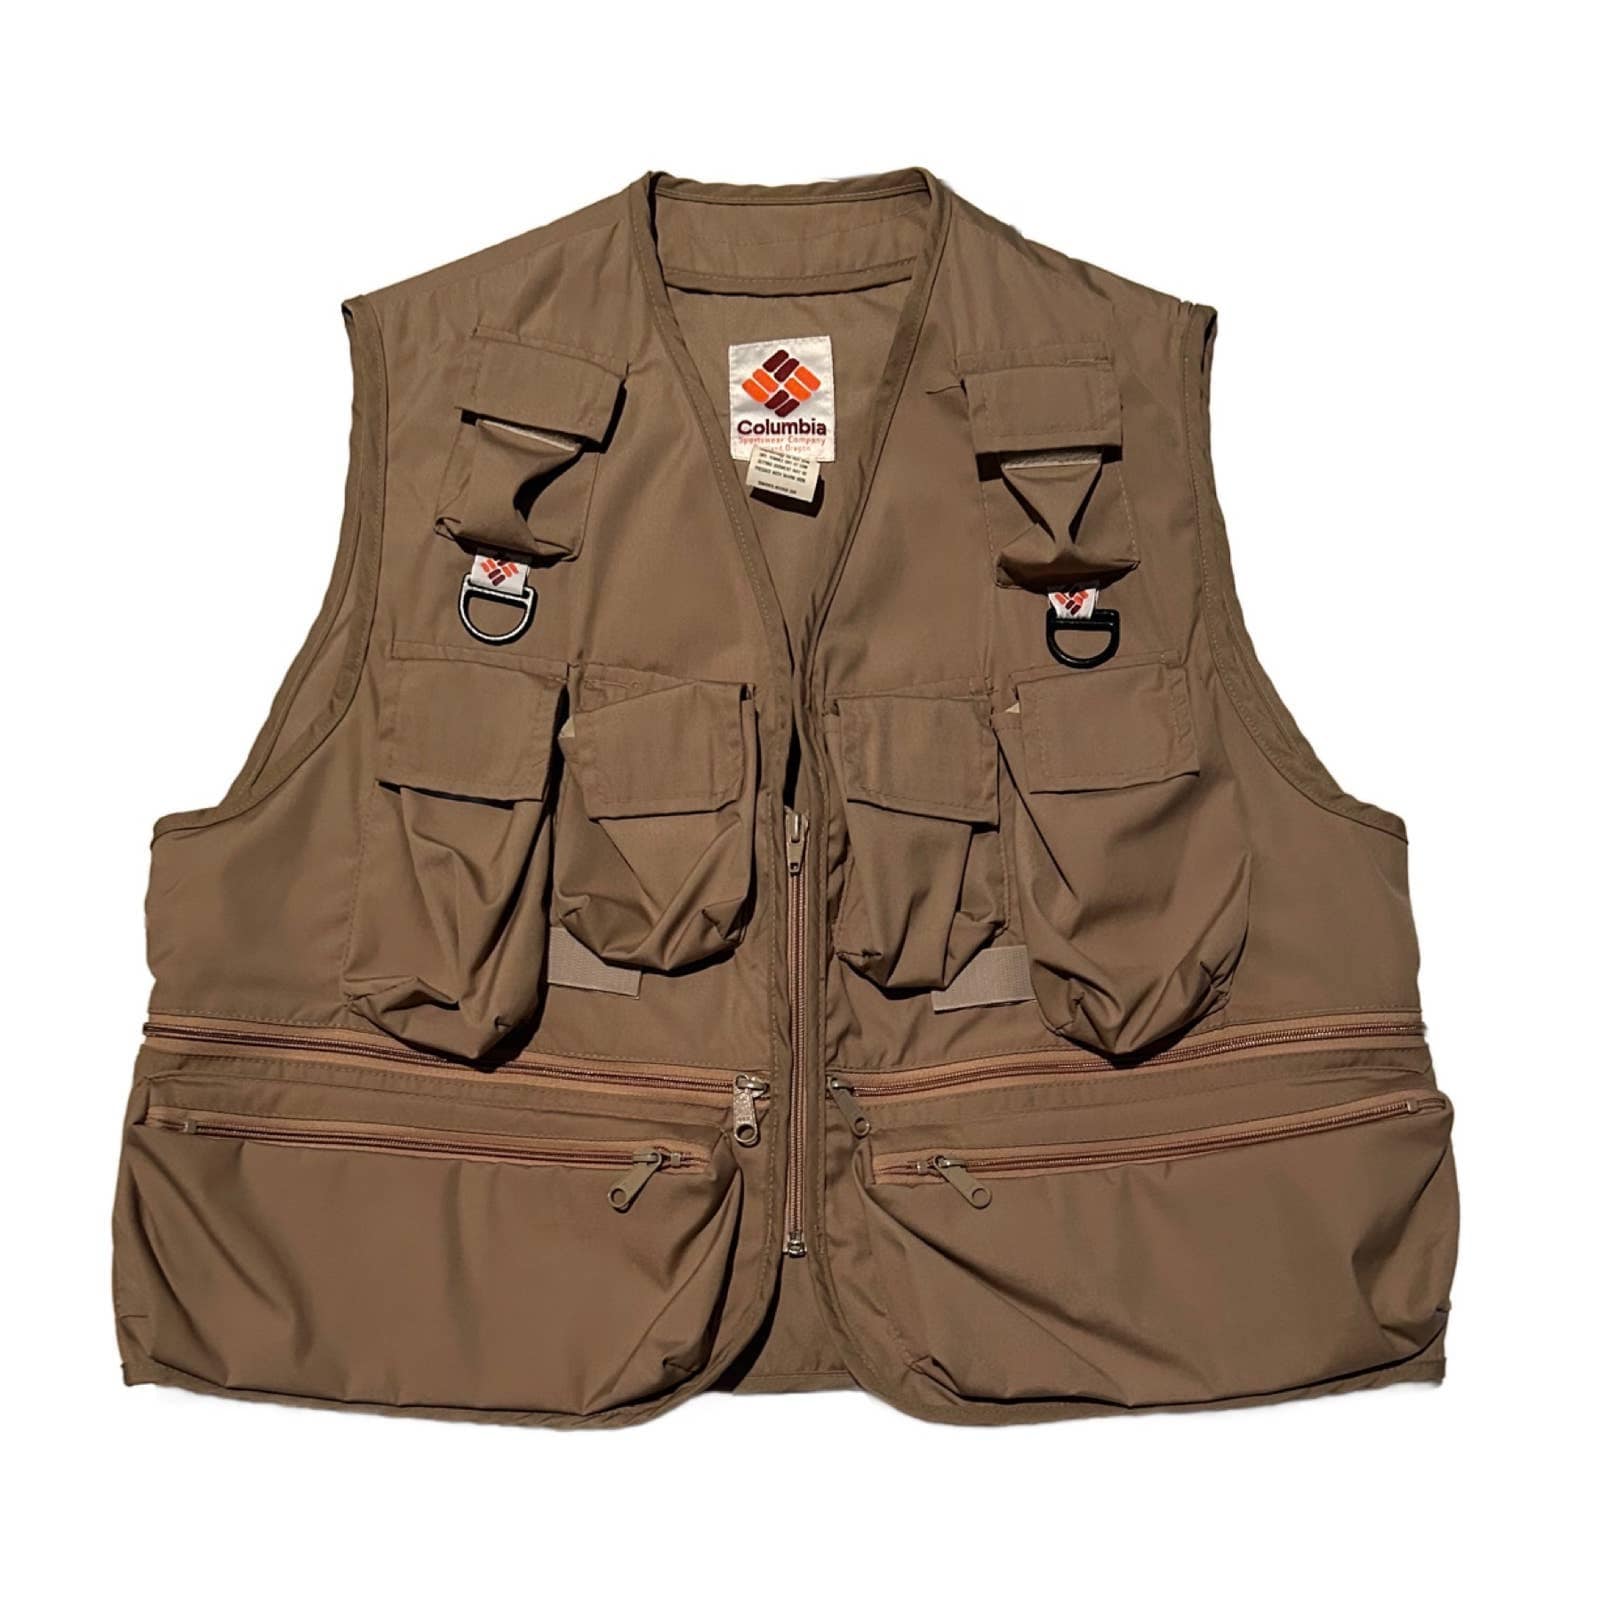 L] 90's Columbia Mesh Fishing Vest Khaki